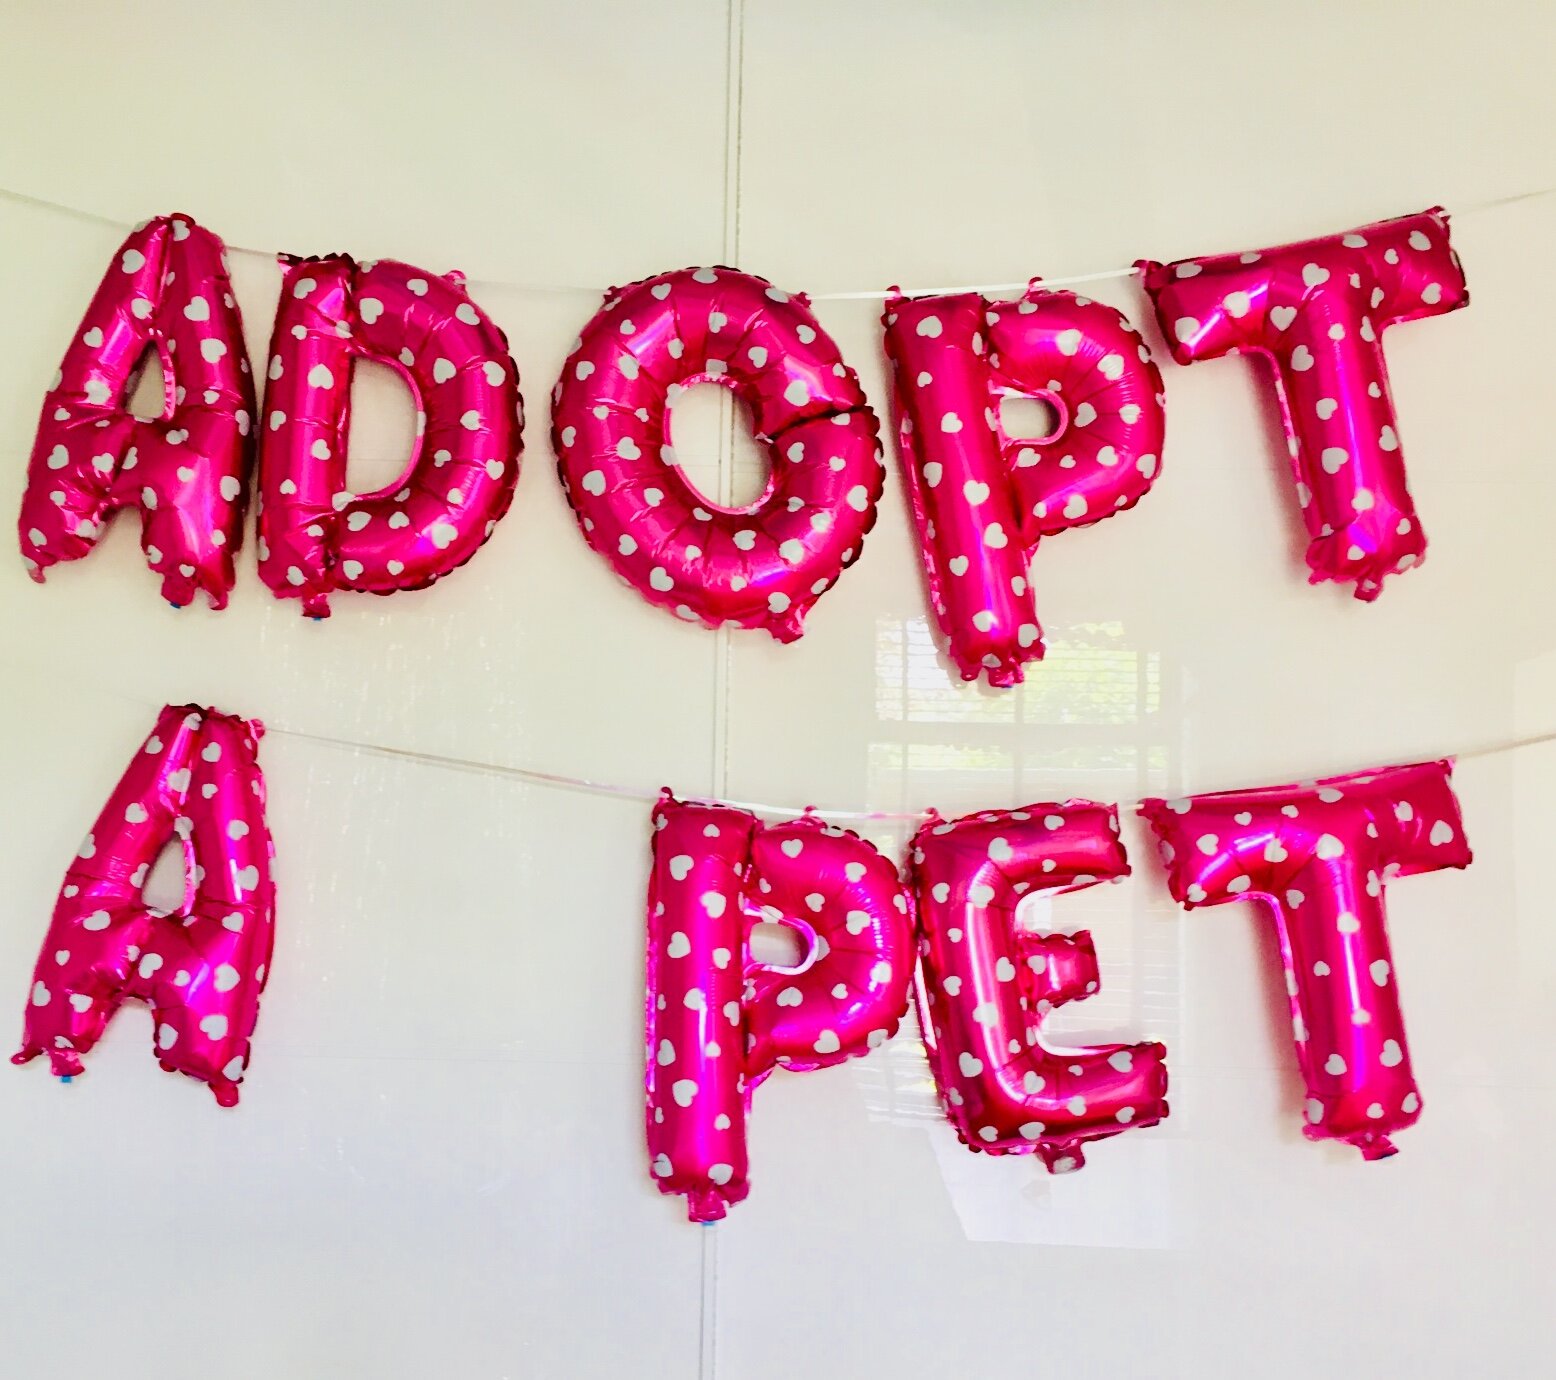 Adopt a pet party 